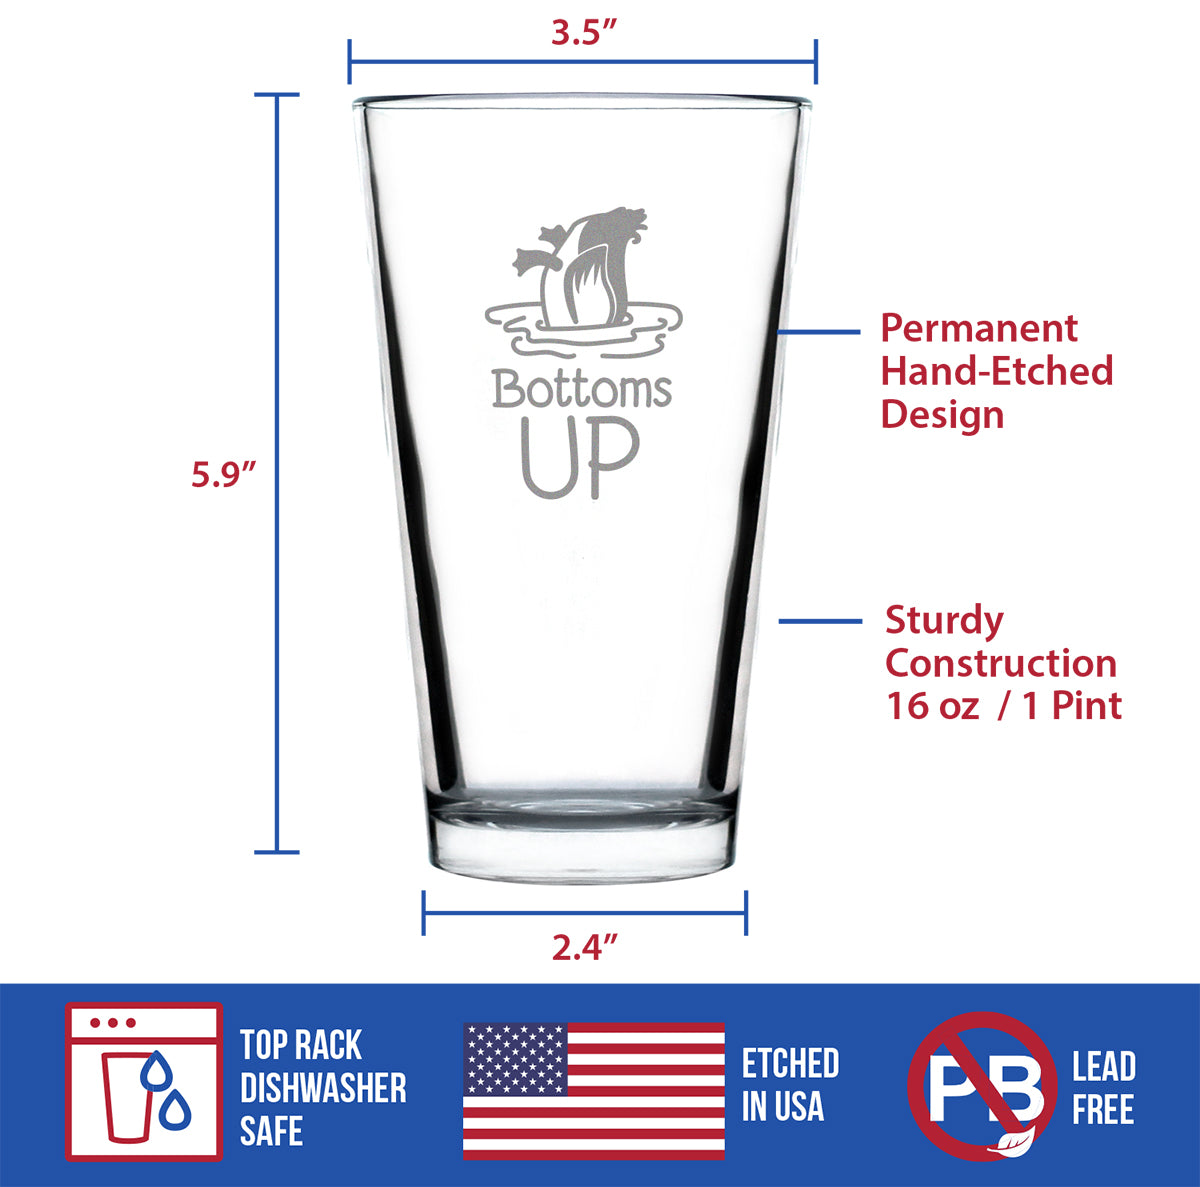 Bottoms Up - 16 Ounce Pint Glass